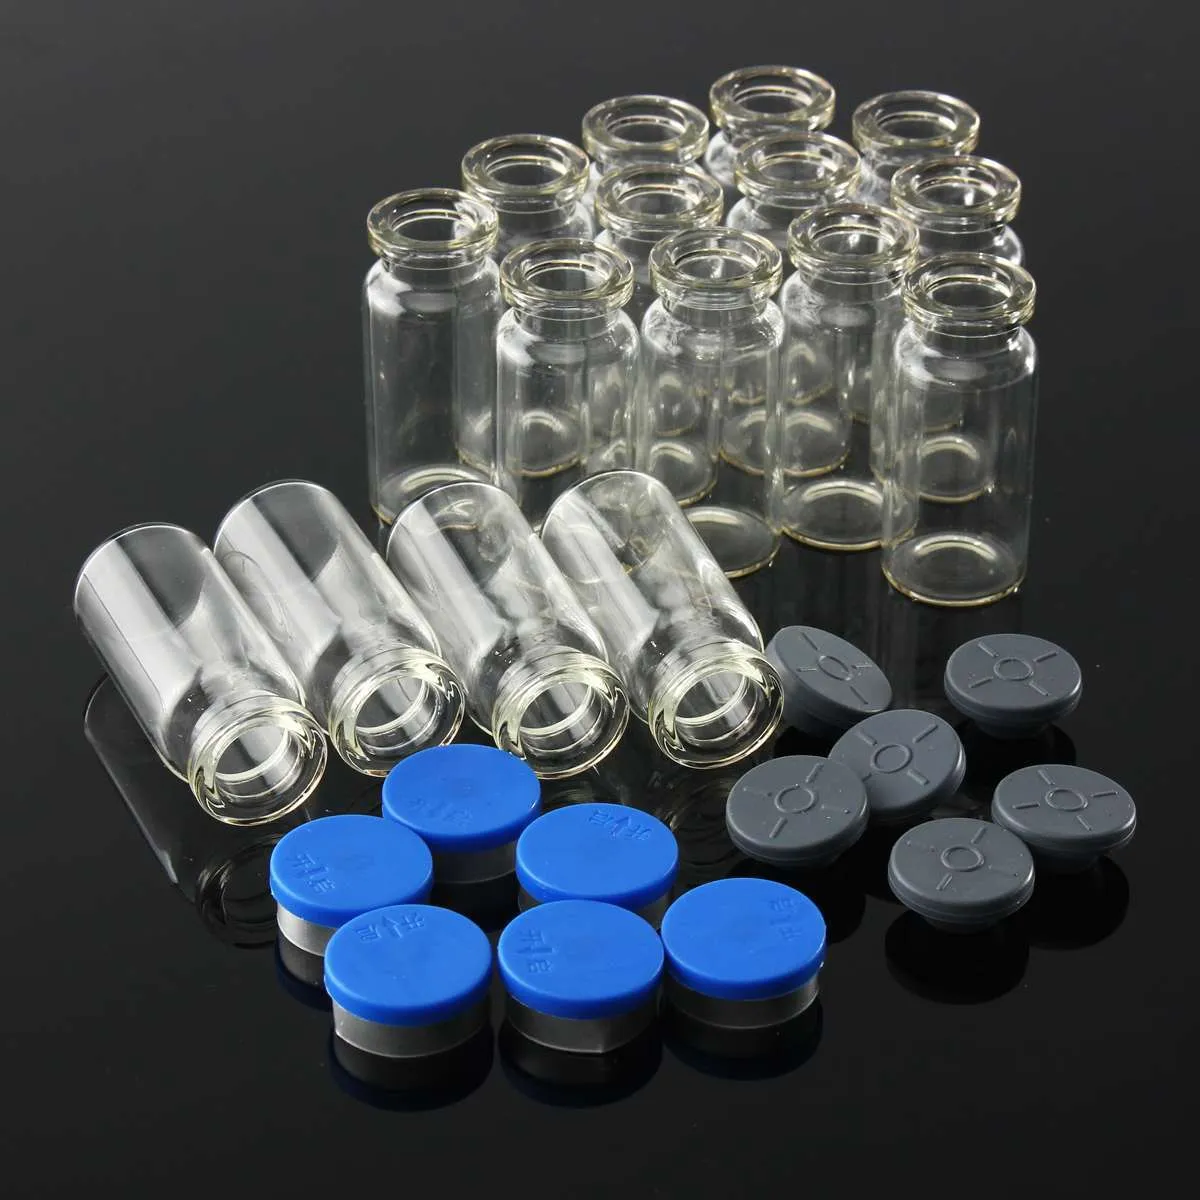 100 Stück 10 ml klare Injektionsglasfläschchen/Stopfen mit Flip-Off-Kappen, kleine Medizinflaschen, experimentelle Testflüssigkeitsbehälter CX200724